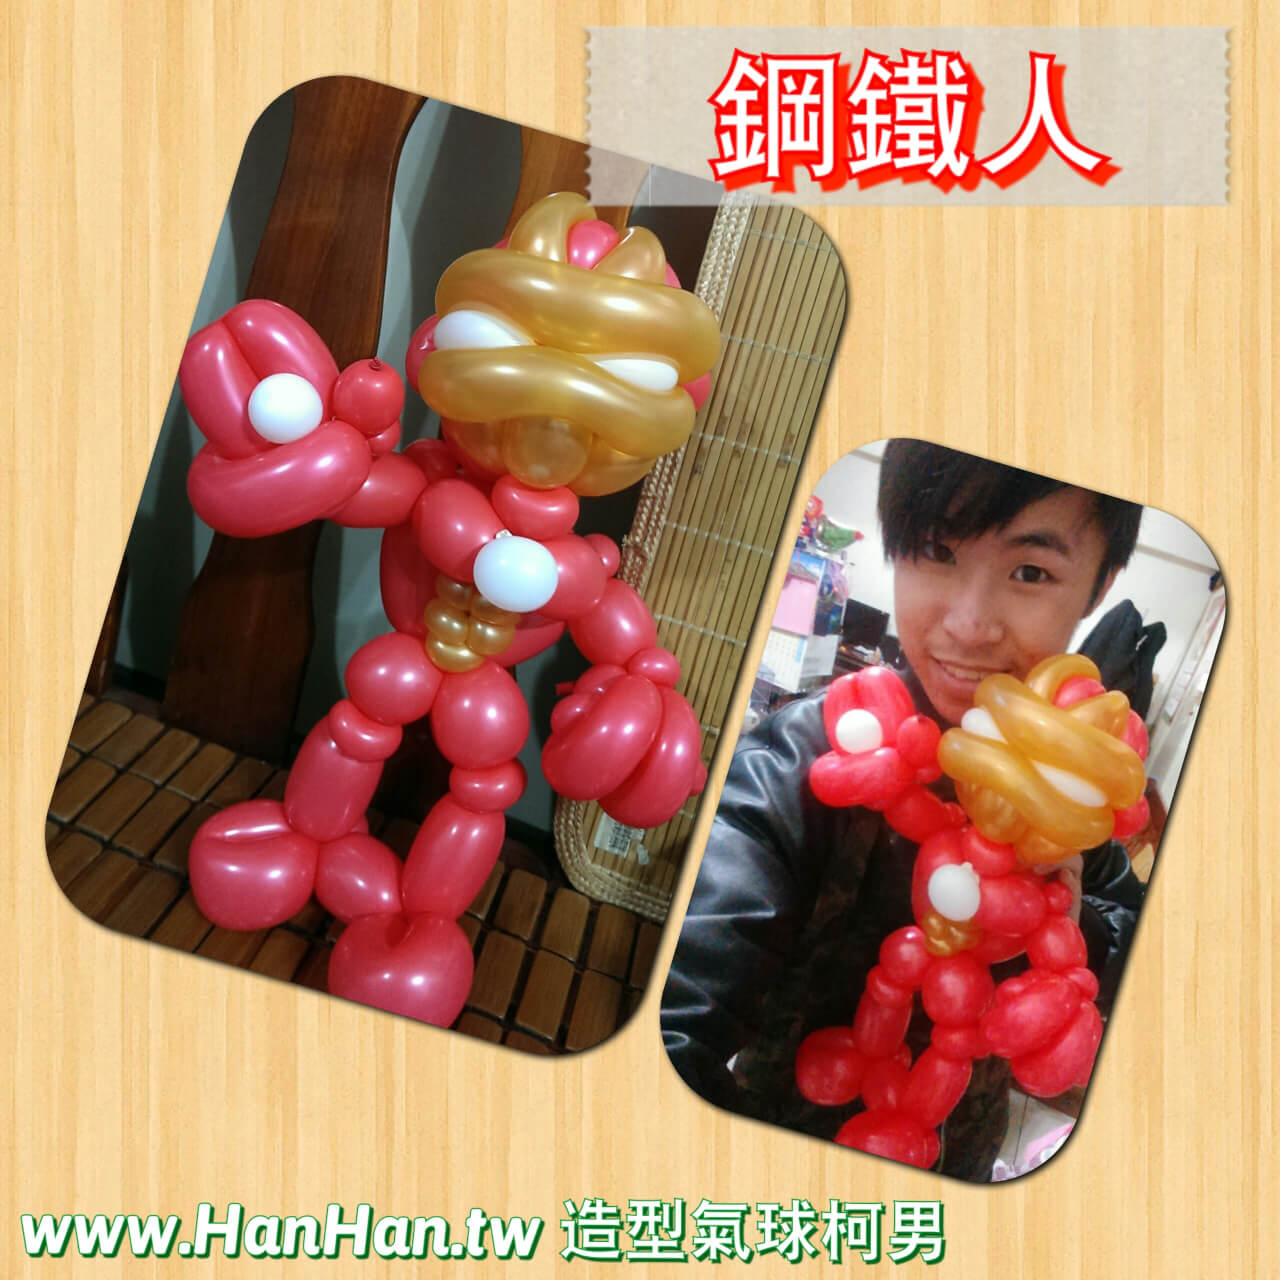 2015-02-19造型氣球作品_鋼鐵人